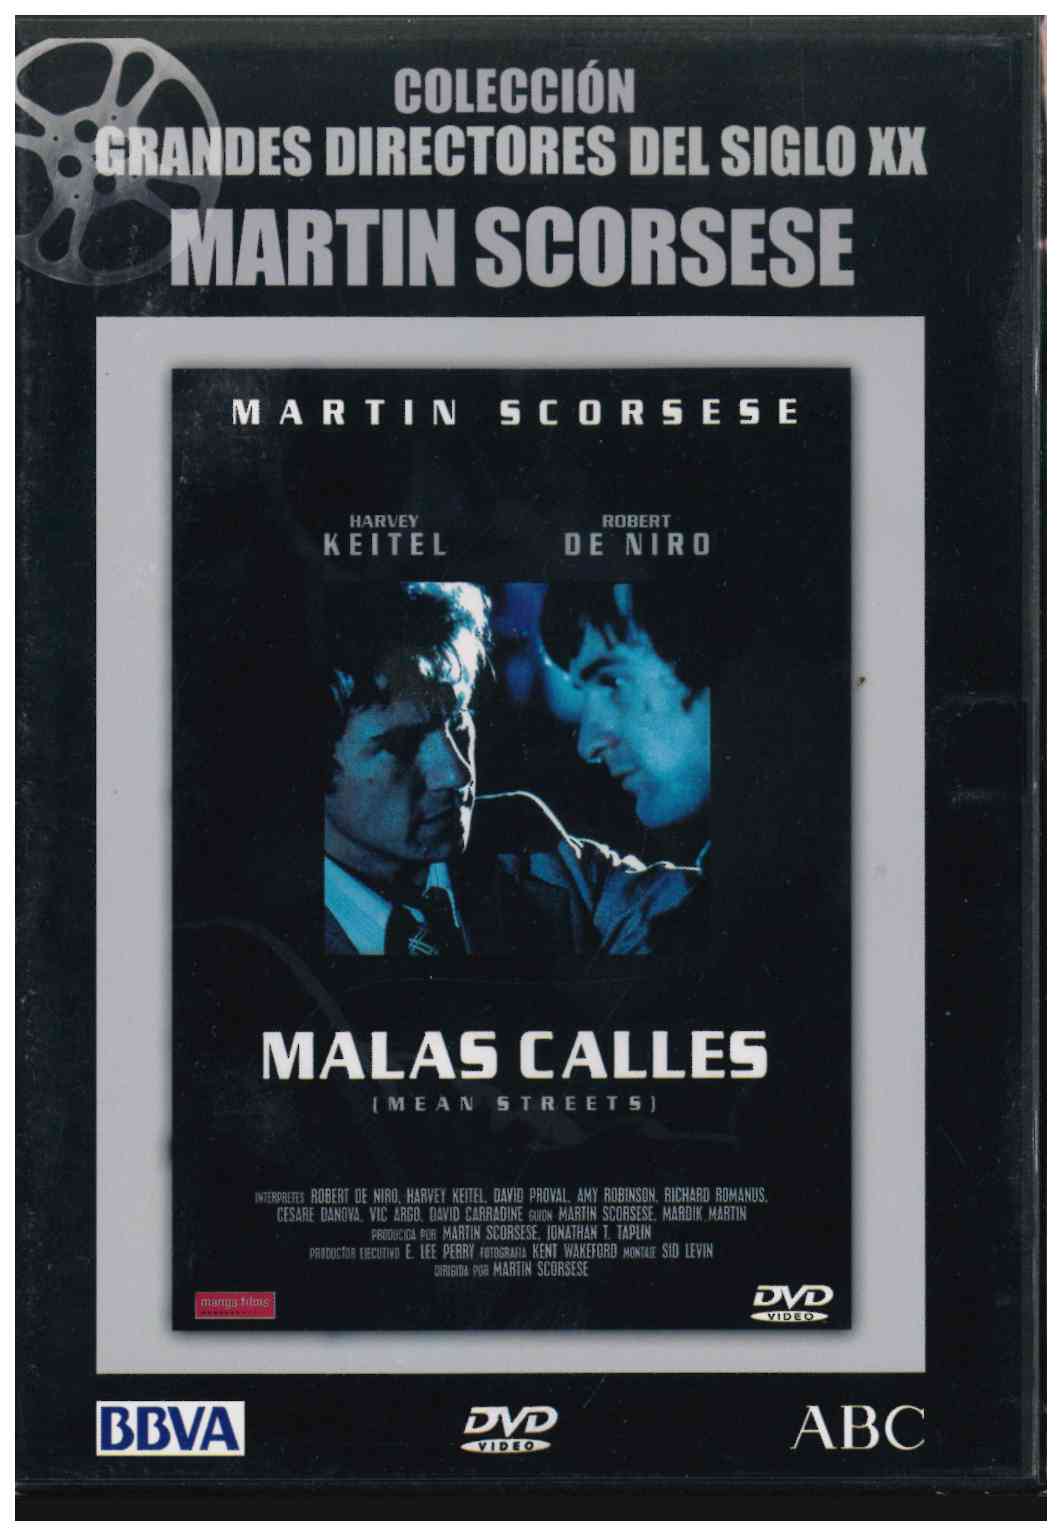 Colección grandes directores del siglo XX. Martin Scorsese. Malas calles